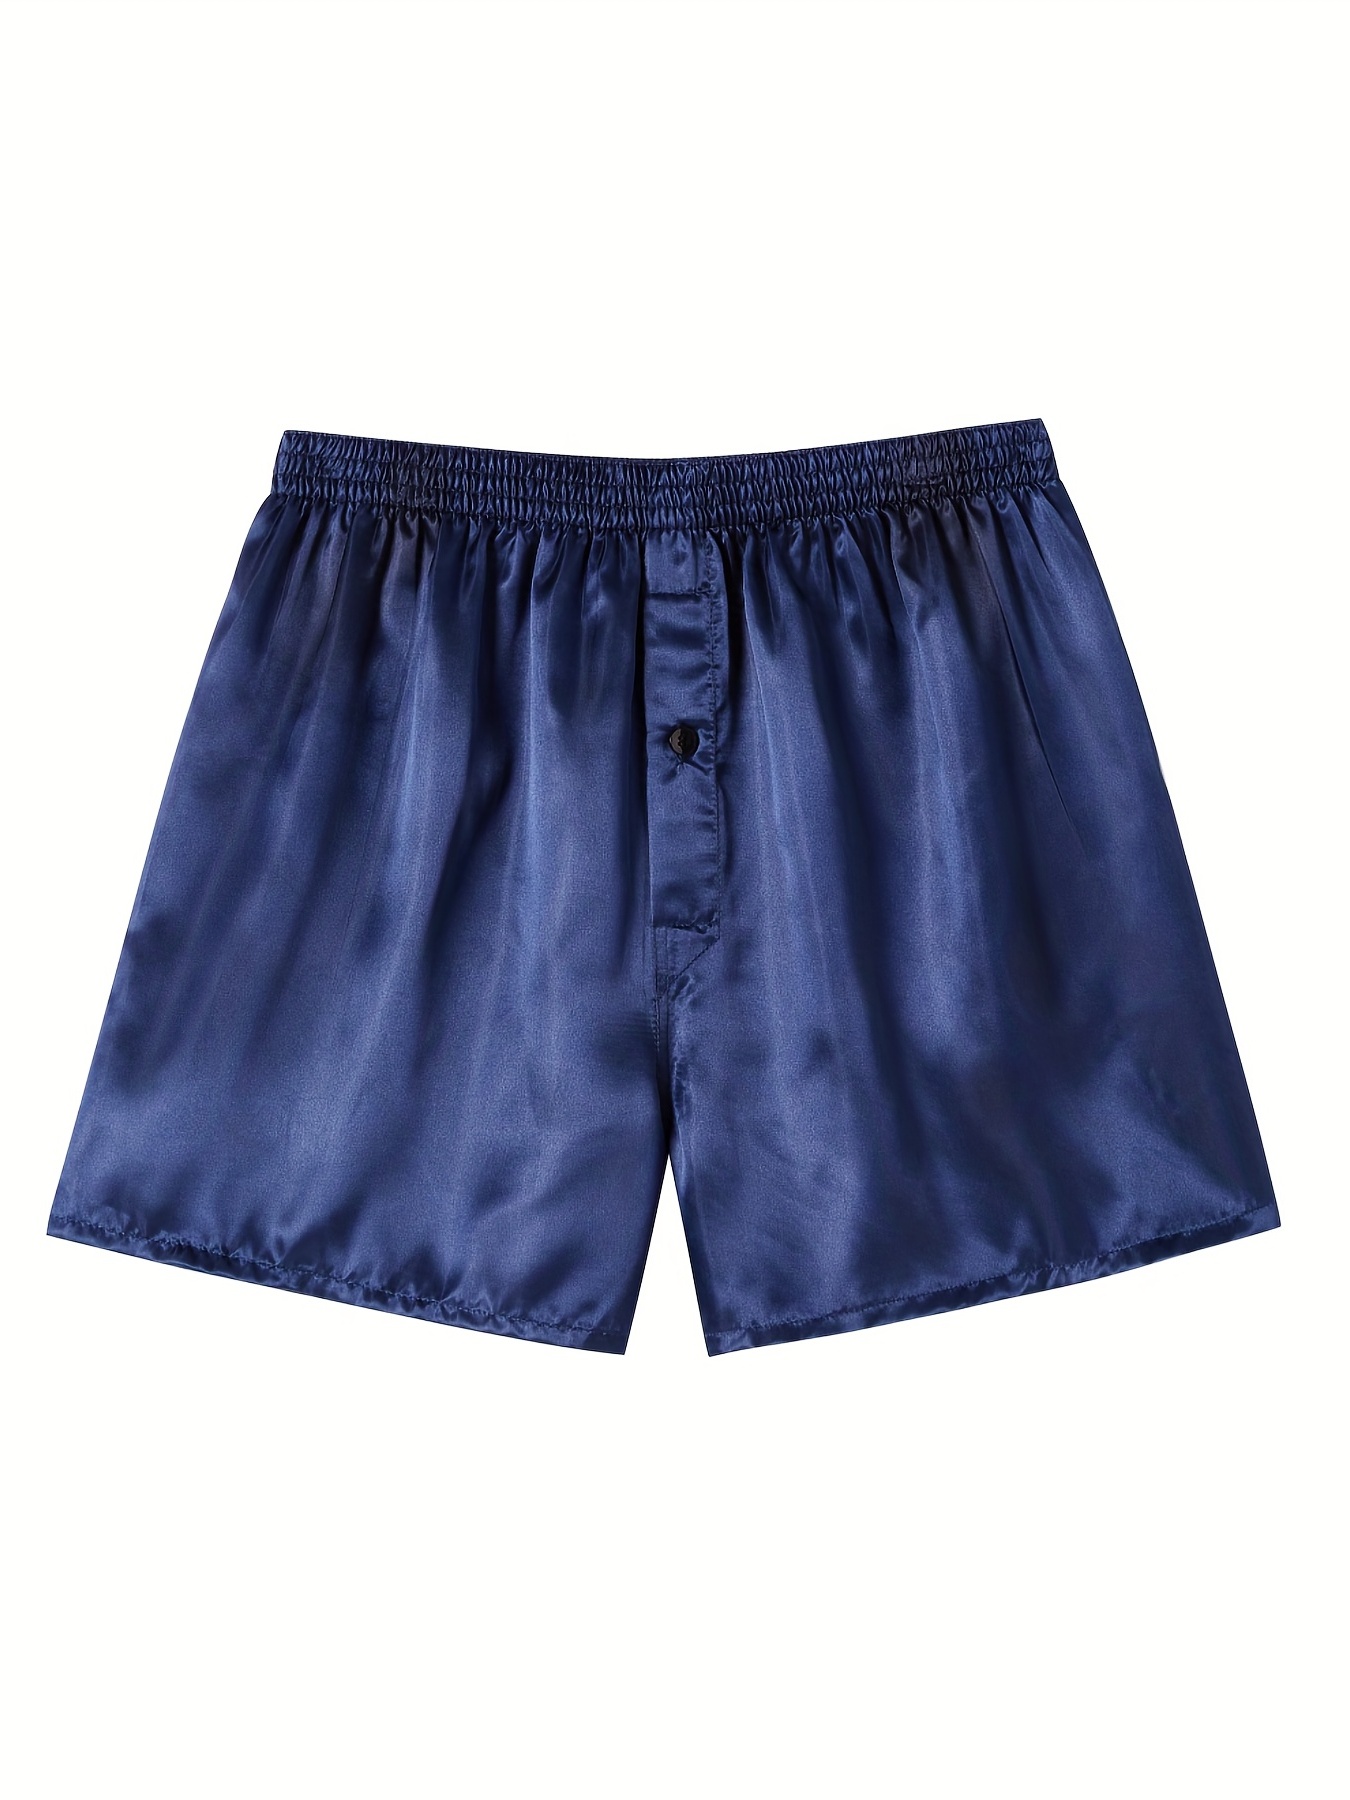 Nieur Men Satin Pajama Boxer Shorts Sleep Shorts Silk Satin Boxers Shorts Underwear  Sleep Pajama Lounge Home Shorts 